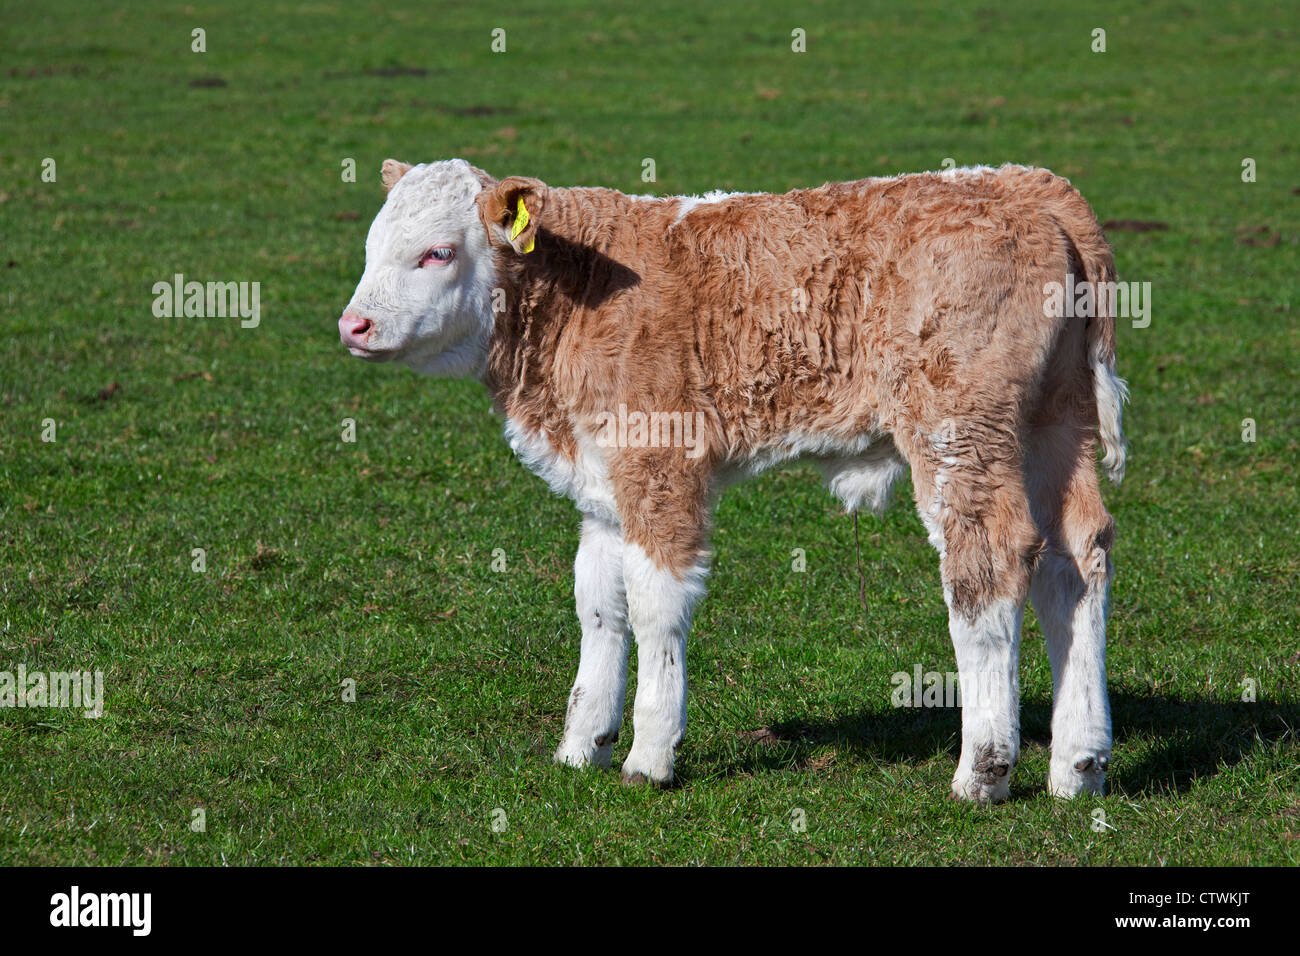 Kalb (Bos Taurus) von inländischen Kuh markiert, mit gelben Ohrmarken in beide Ohren im Feld, Deutschland Stockfoto